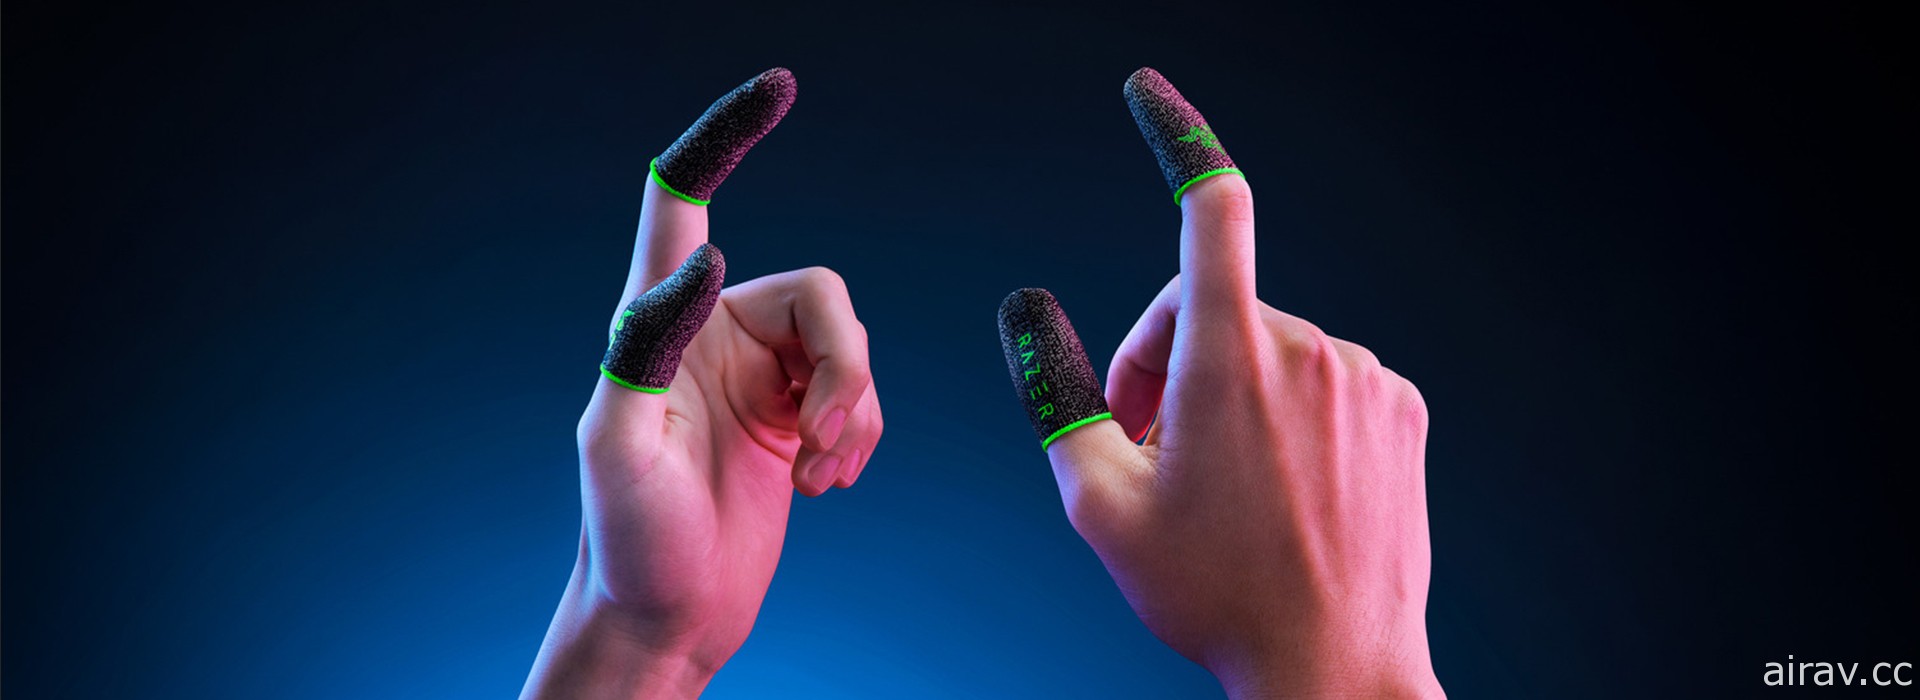 雷蛇推出手機遊戲專用「電競指套 Razer Gaming Finger Sleeve」 強調輕薄、高靈敏度